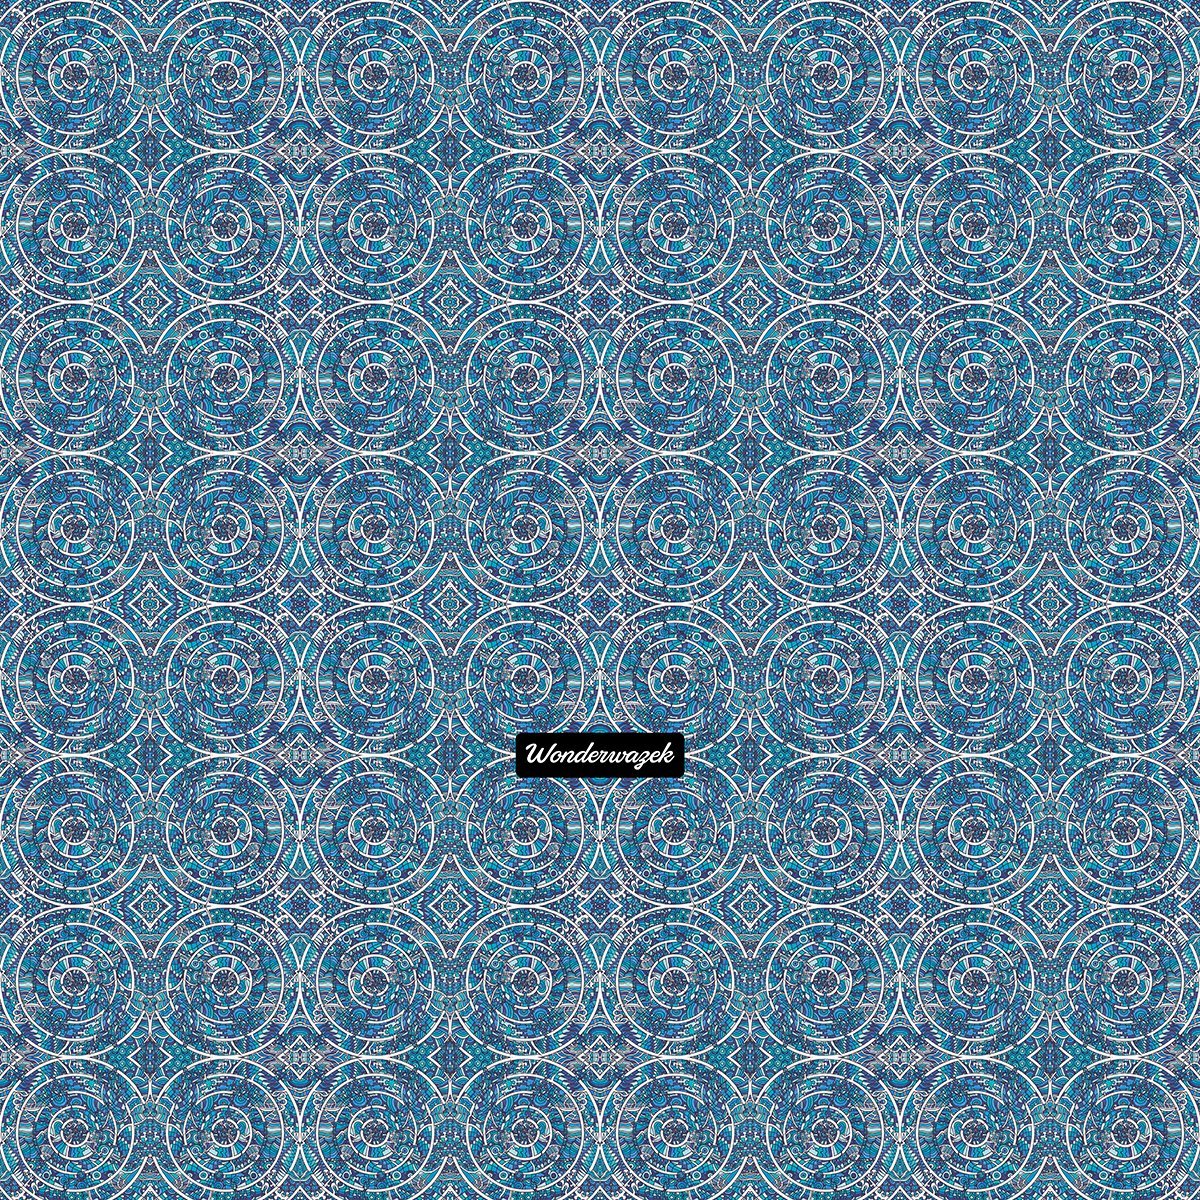 Strandtasche • Kreiswelle – Variation 3, blau, weiß - Wonderwazek